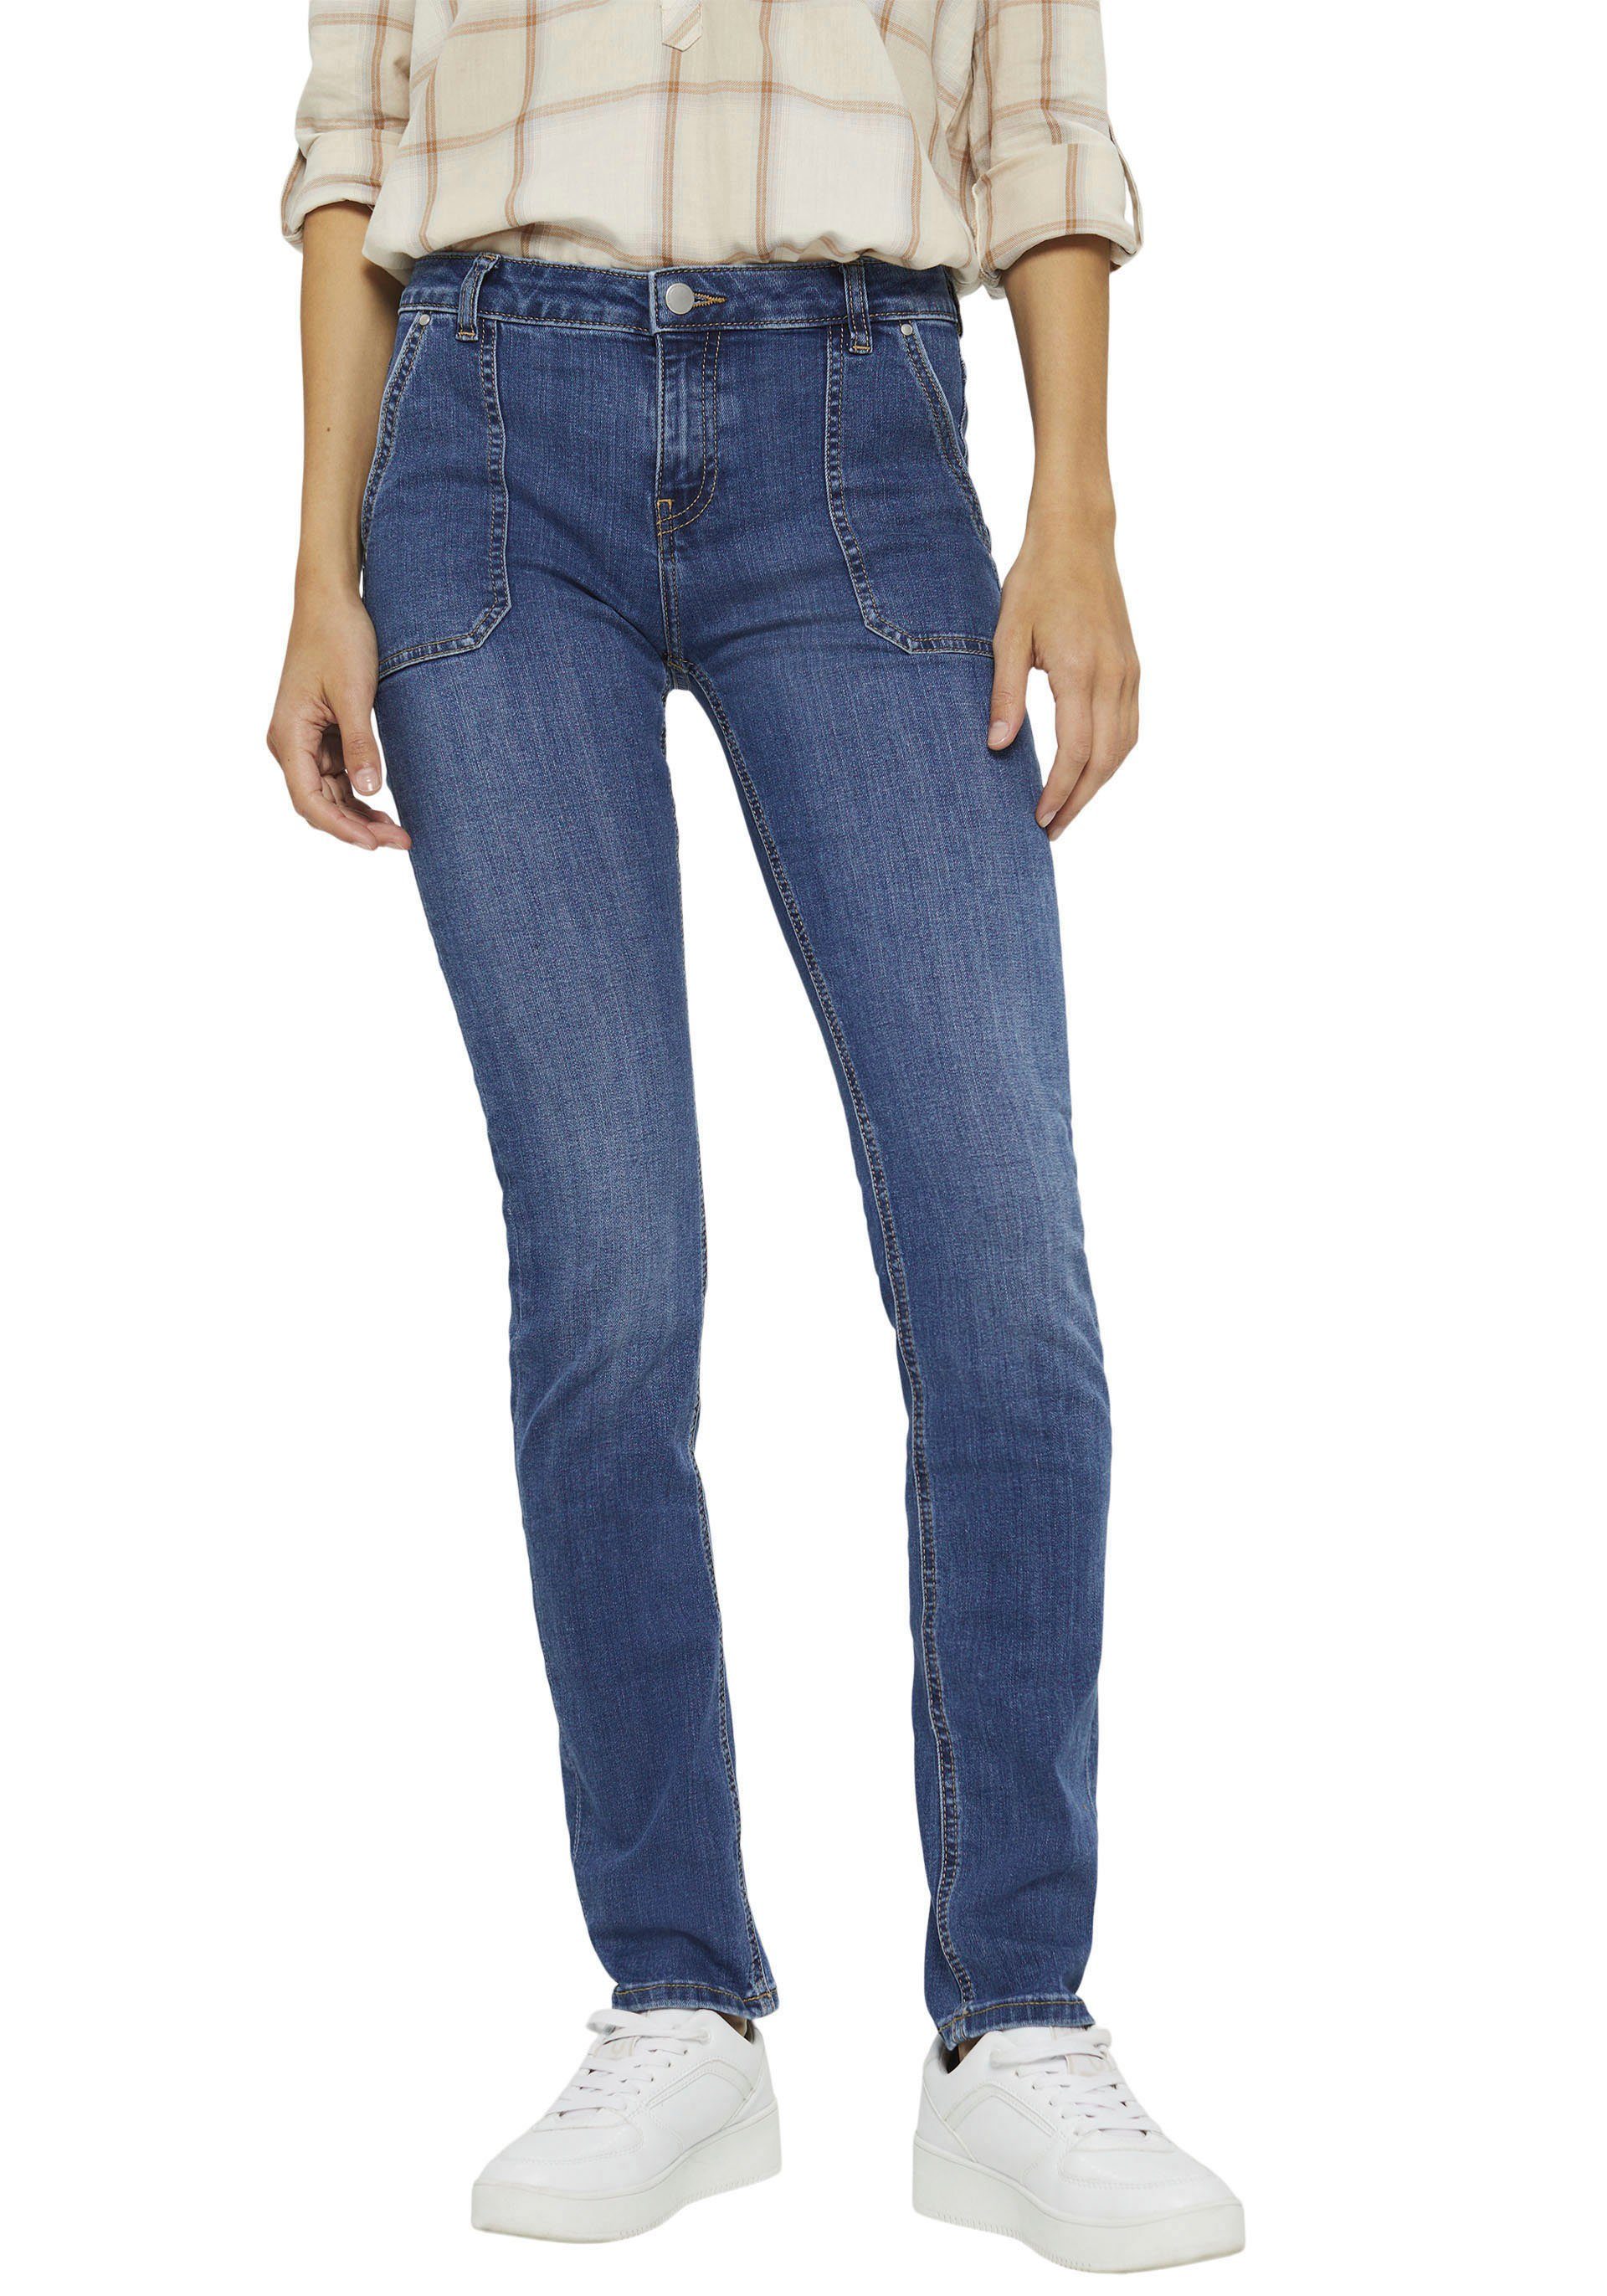 edc by Esprit Low-rise-Jeans mit großen aufgesetzten Eingriifftaschen vorne  online kaufen | OTTO